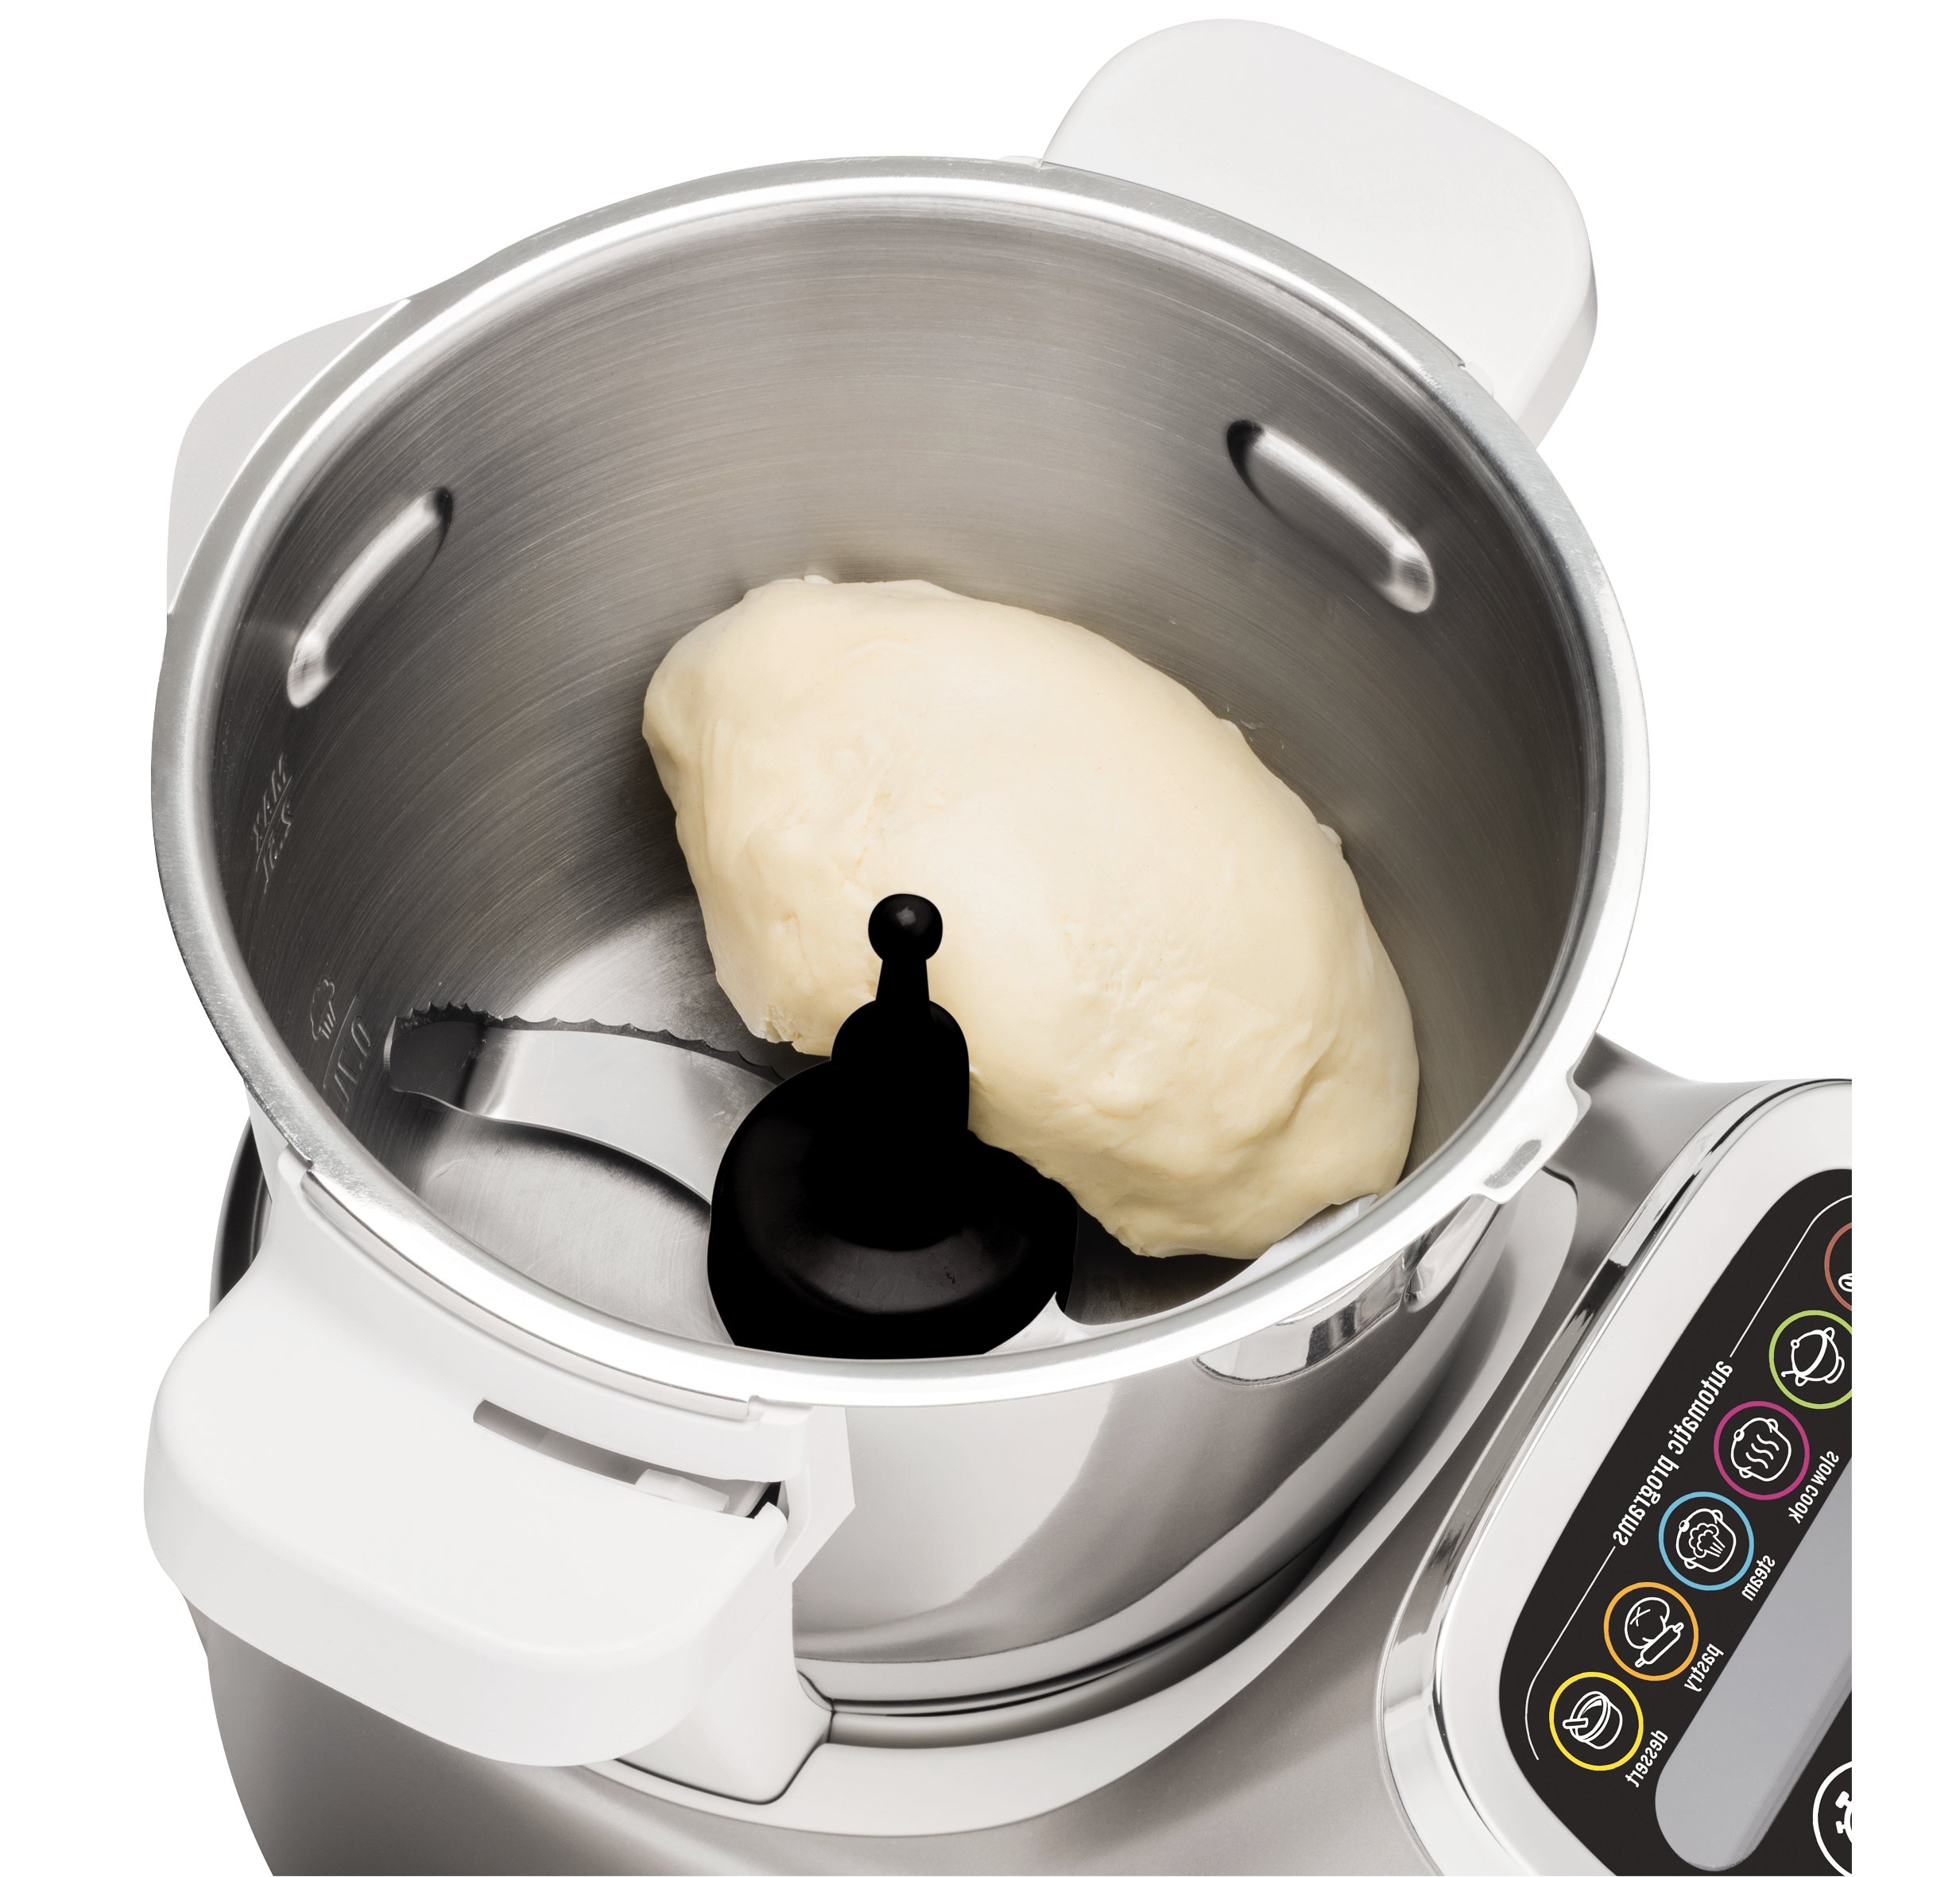 Robot De Cocina moulinex cuisine companion hf800a13 1550 4.5 6 programas con 45 capacidad personas 12 velocidades y temperatura 30º 130º mantenimiento 5 hf800a 4.5l 1550w